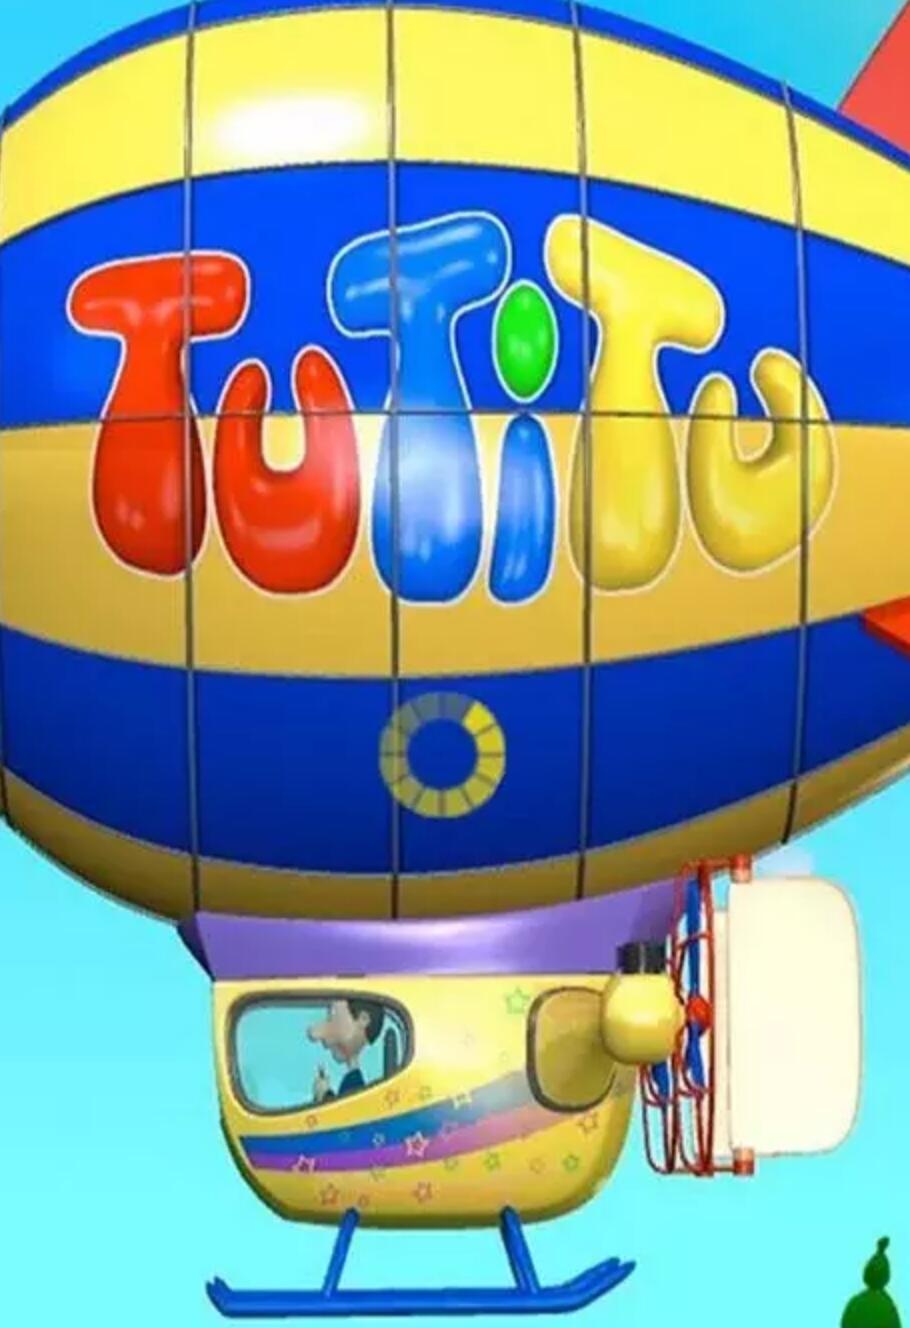 宝宝爱玩具TuTiTu 国产无对白益智动画片全49集下载 高清mp4 适合2-3岁宝宝